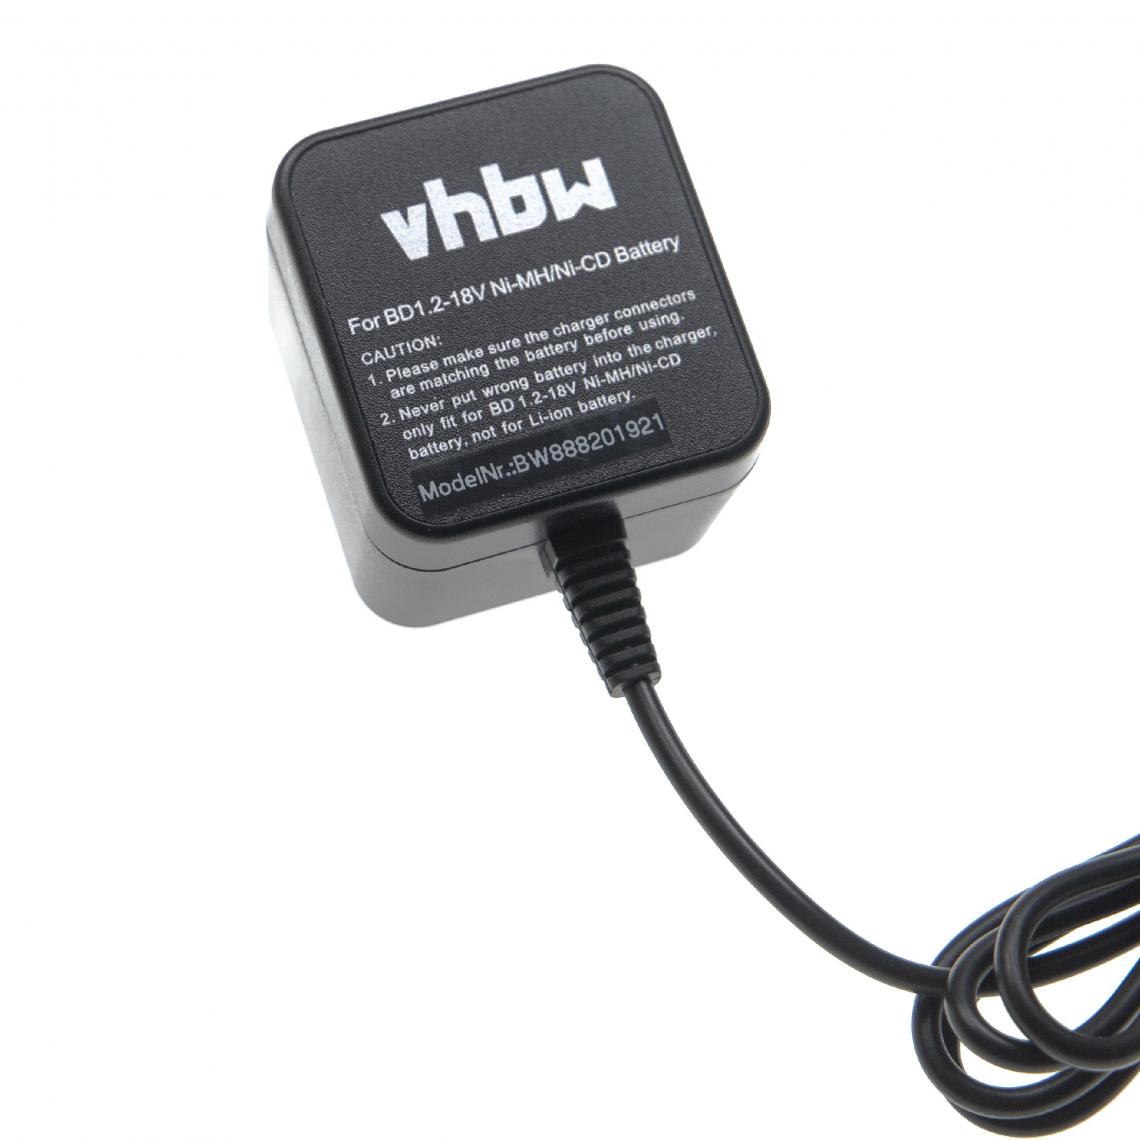 Vhbw - vhbw Chargeur compatible avec Black & Decker 15199502, 151995-02, 1519950-3, 383900-03, 388183-00, 83900-004 batteries Ni-Cd, NiMH d'outils - Accessoires vissage, perçage